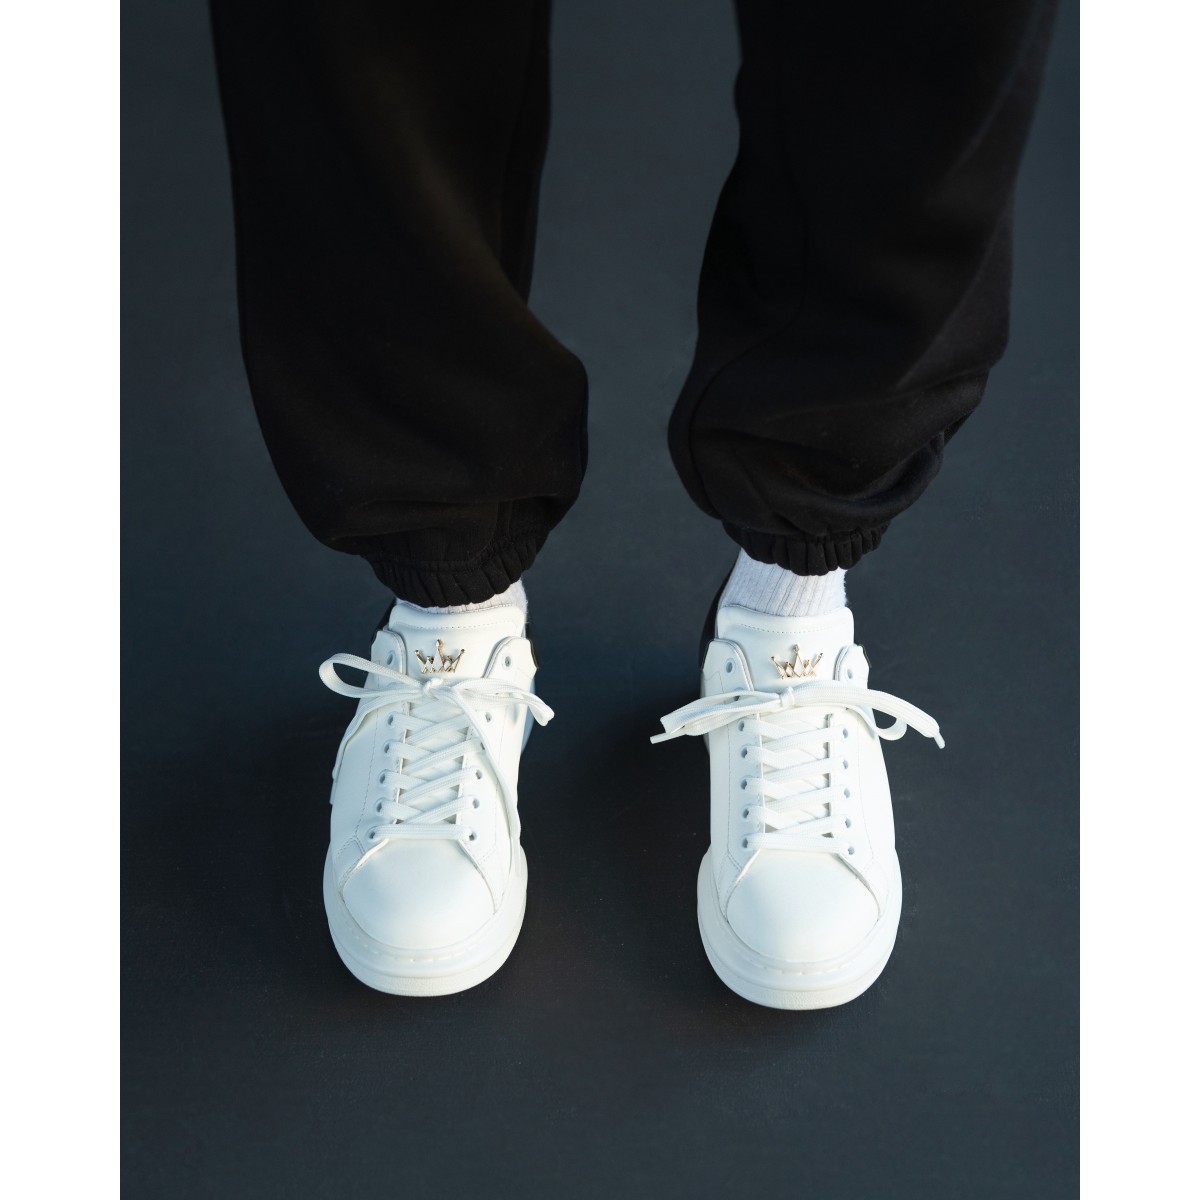 Zapatillas de Hombre con Suela Alta Coronada Blanco